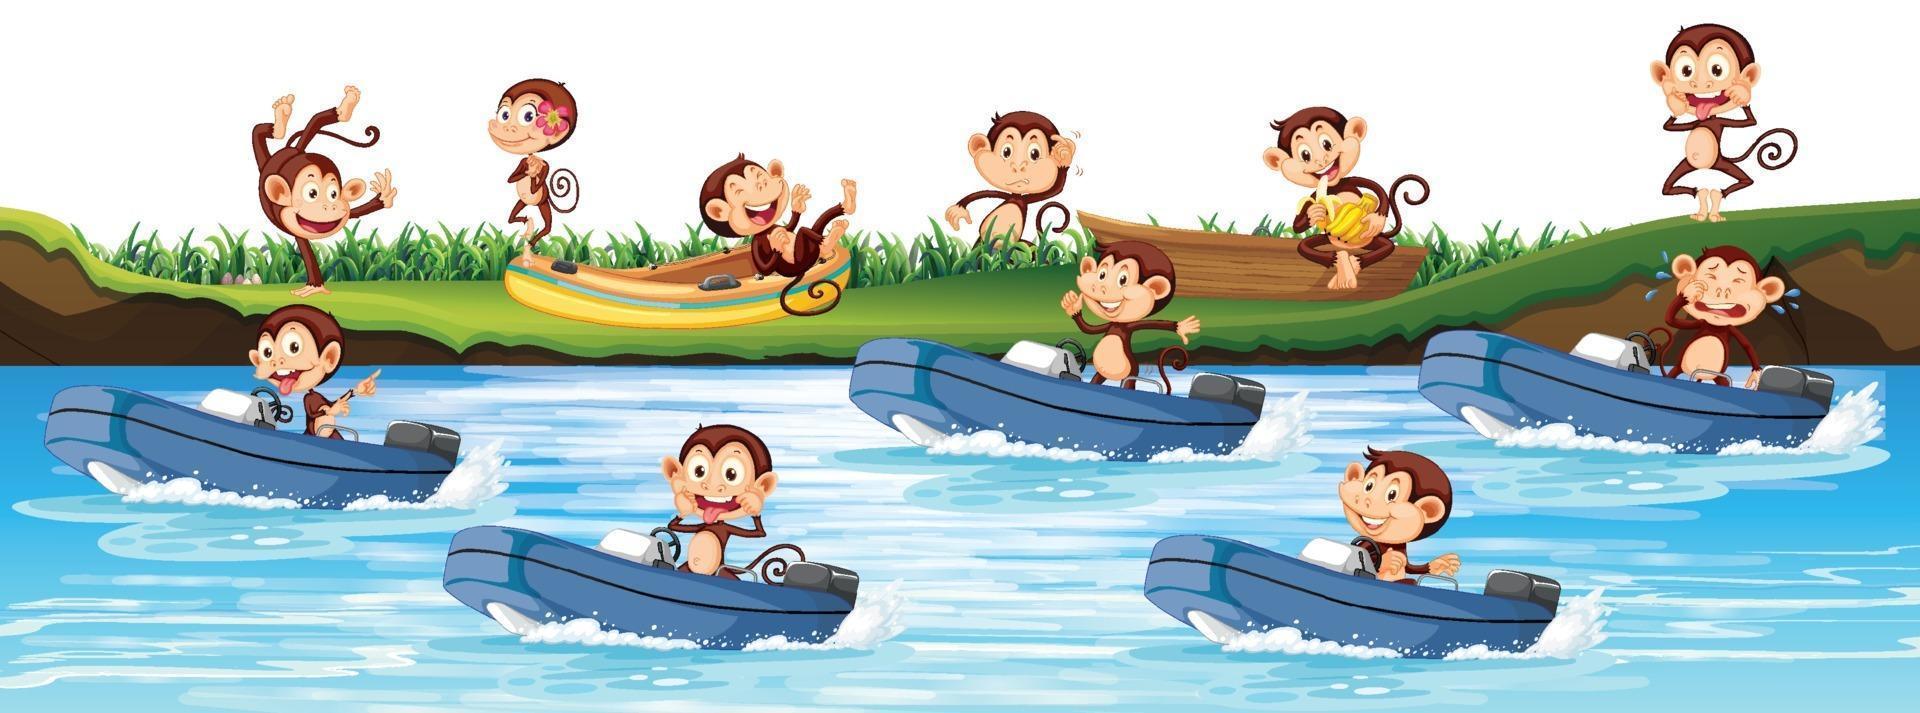 många apor som åker motorbåt i floden vektor